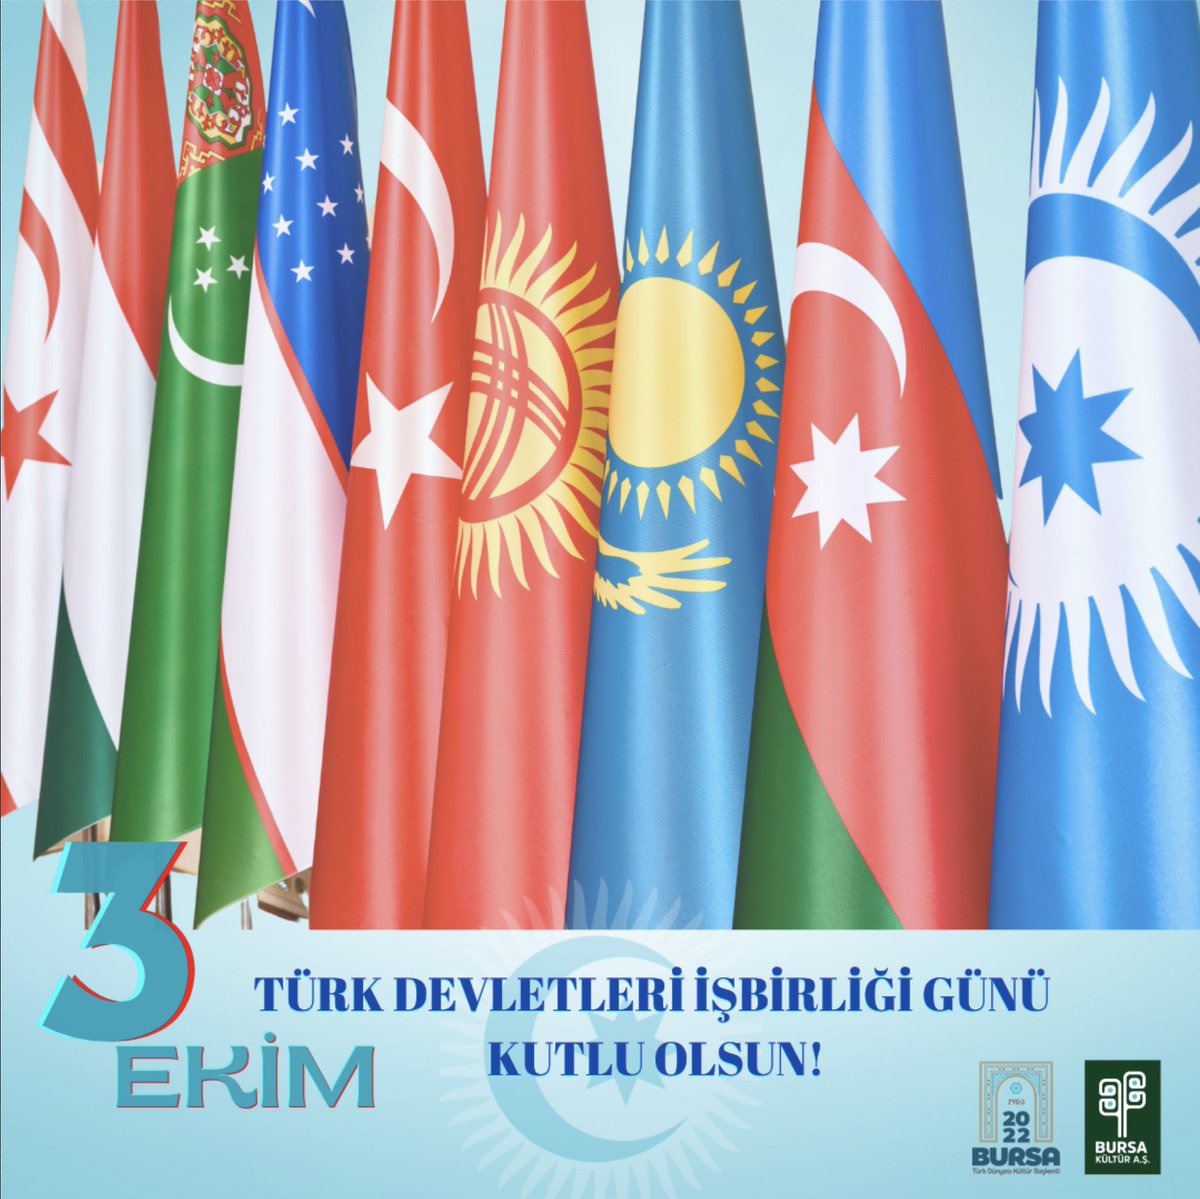 Türk Devletleri İşbirliği Günü kutlu olsun! 

#BizBirlikteDahaGüçlüyüz
#BirliğimizGücümüzdür